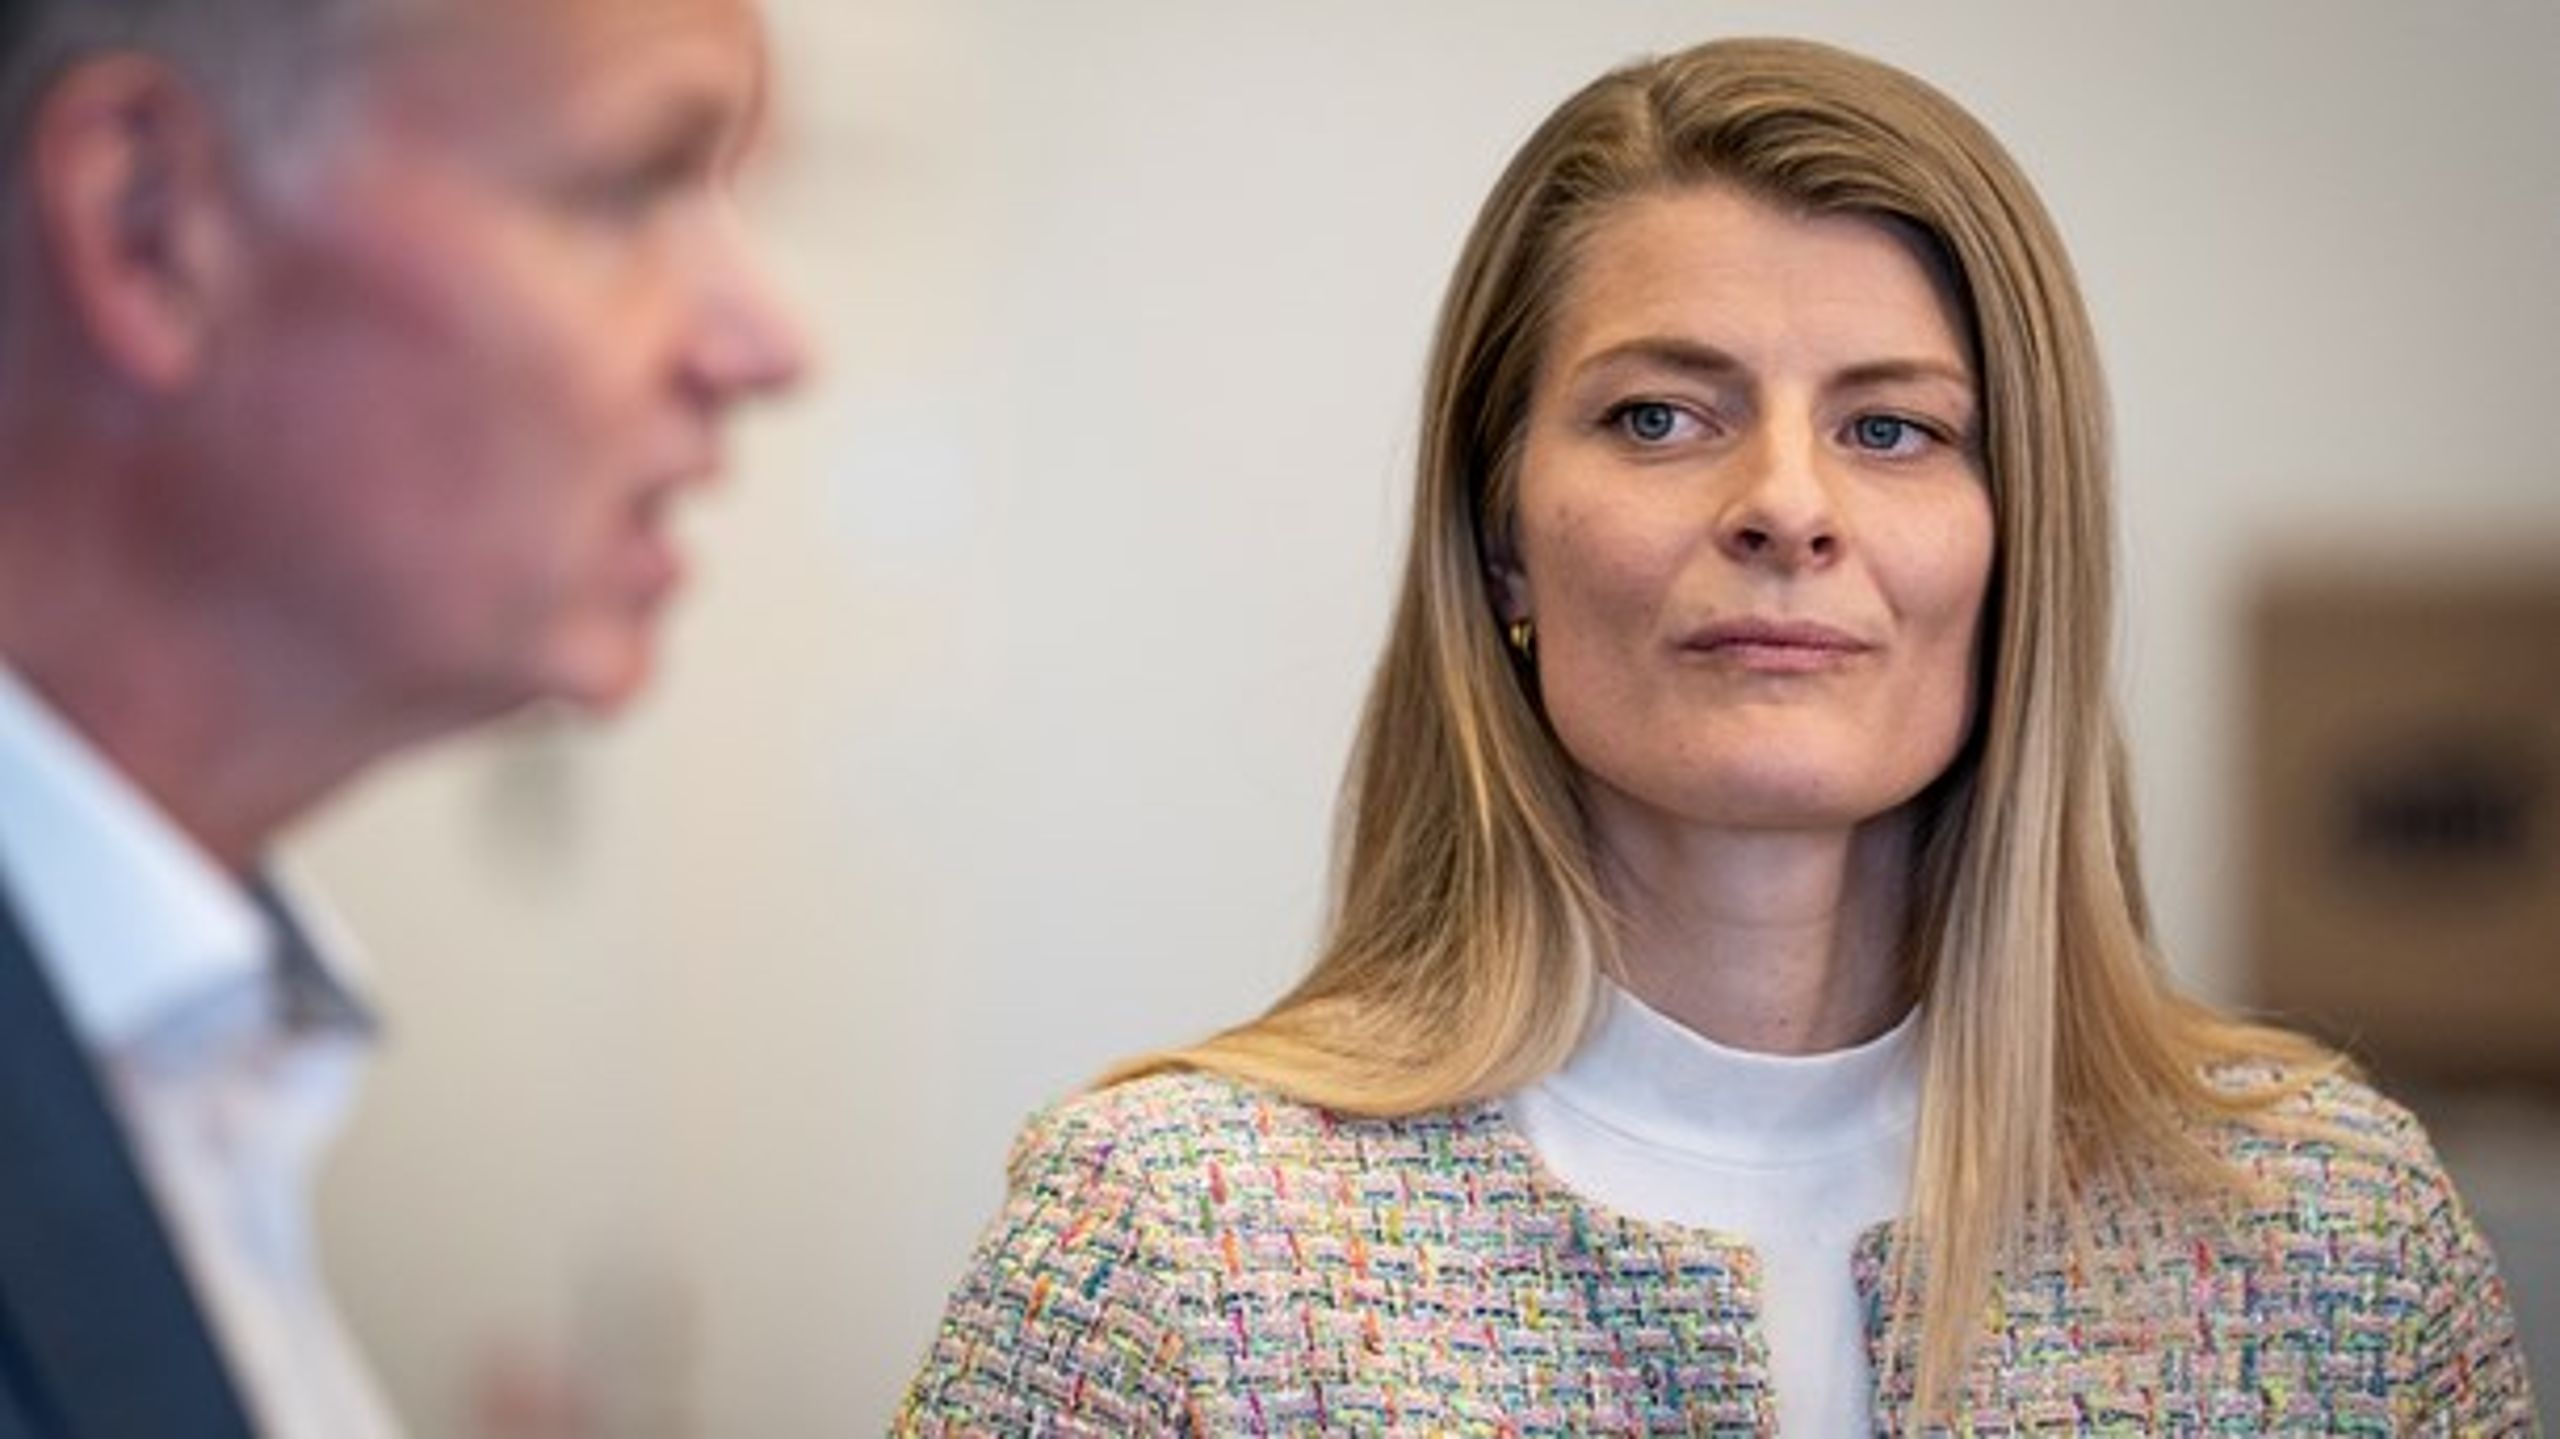 Ane Halsboe-Jørgensens (S) har ingen kommentar, og SU-ekspertudvalget har ikke hørt noget.